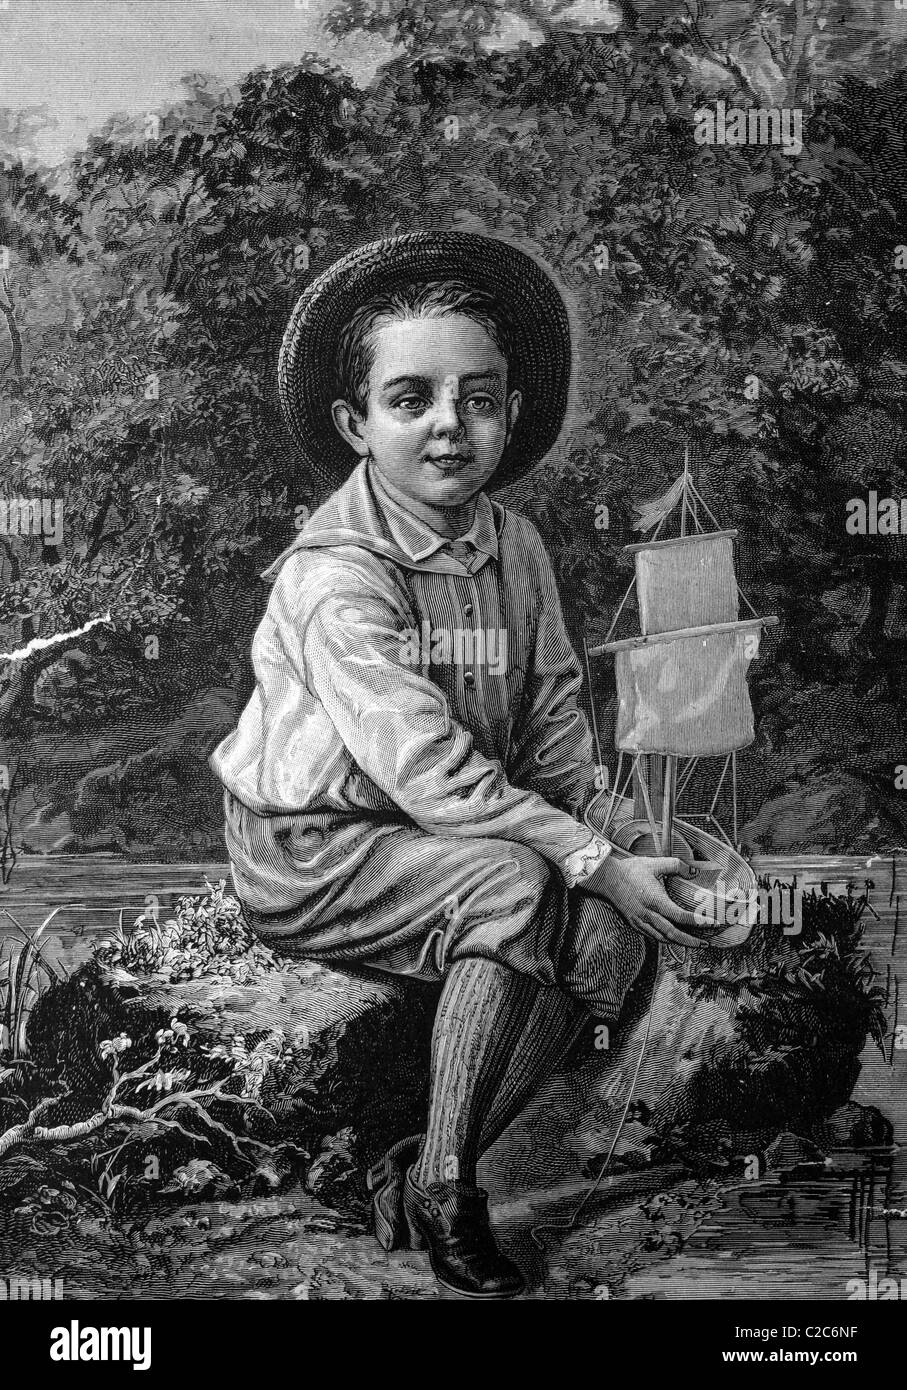 Bambino con un modello di nave, storico illustrazione, circa 1886 Foto Stock